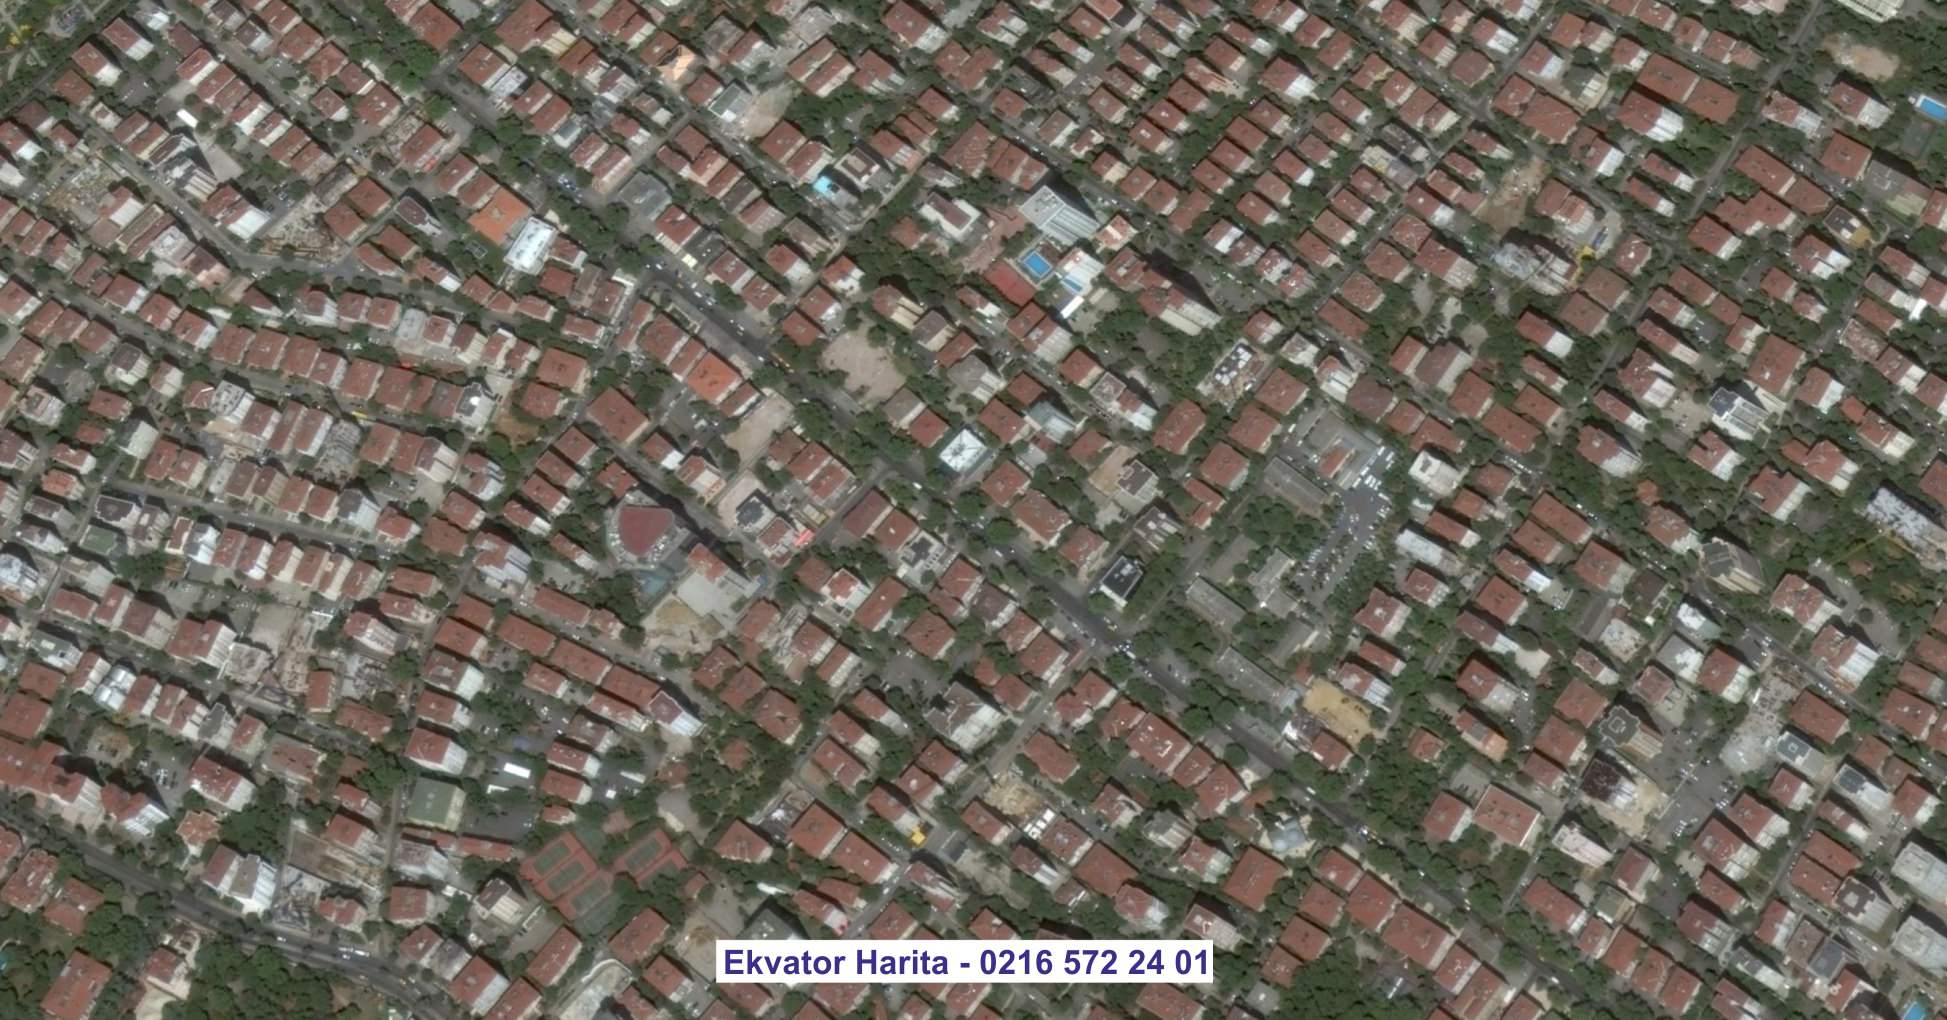 Gaziantep Uydu Görüntüsü Örnek Fotoğrafı